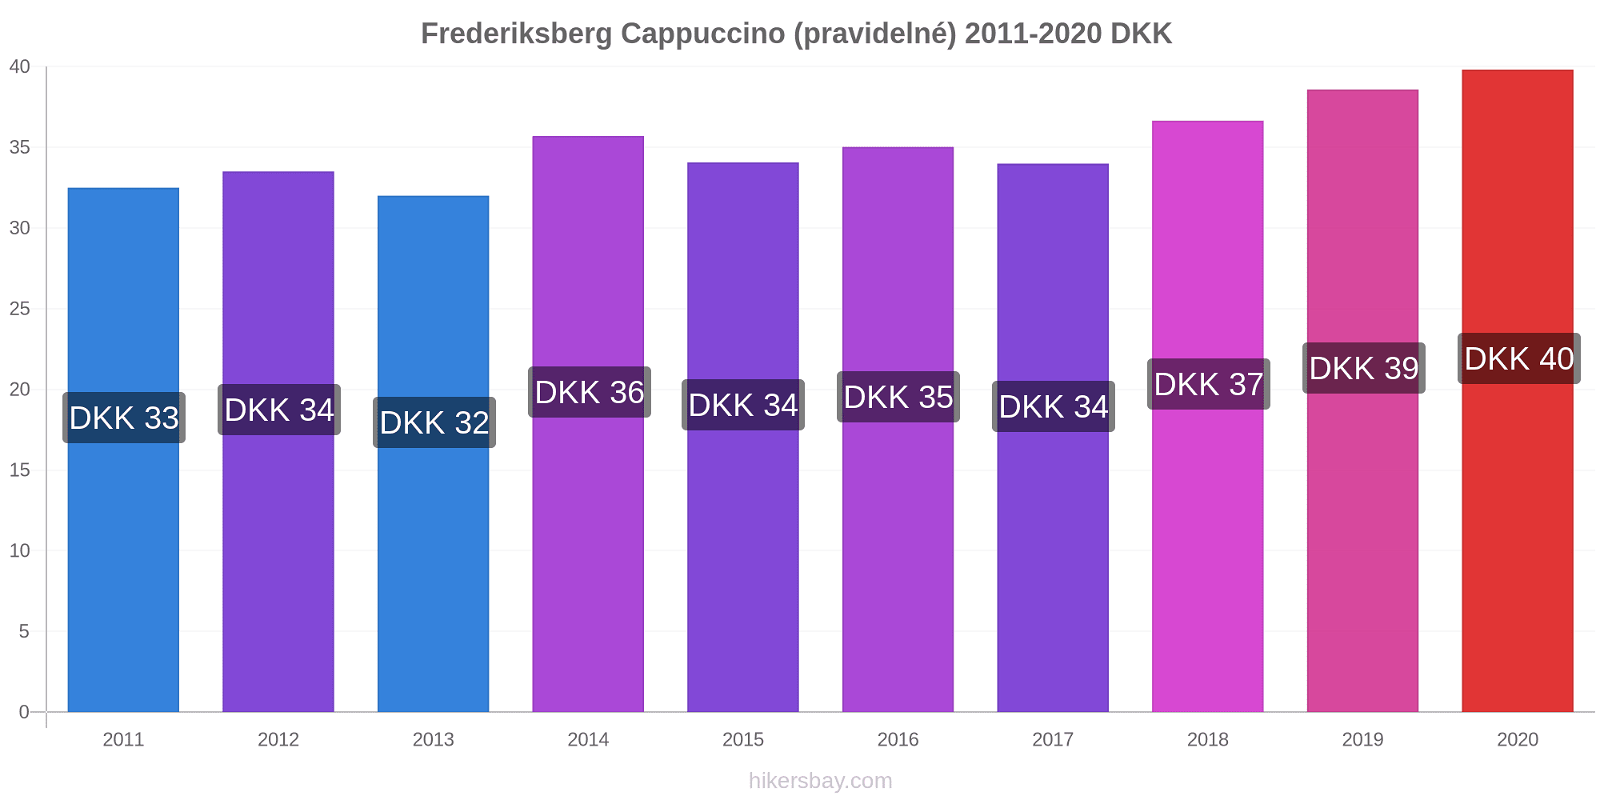 Frederiksberg změny cen Cappuccino (pravidelné) hikersbay.com